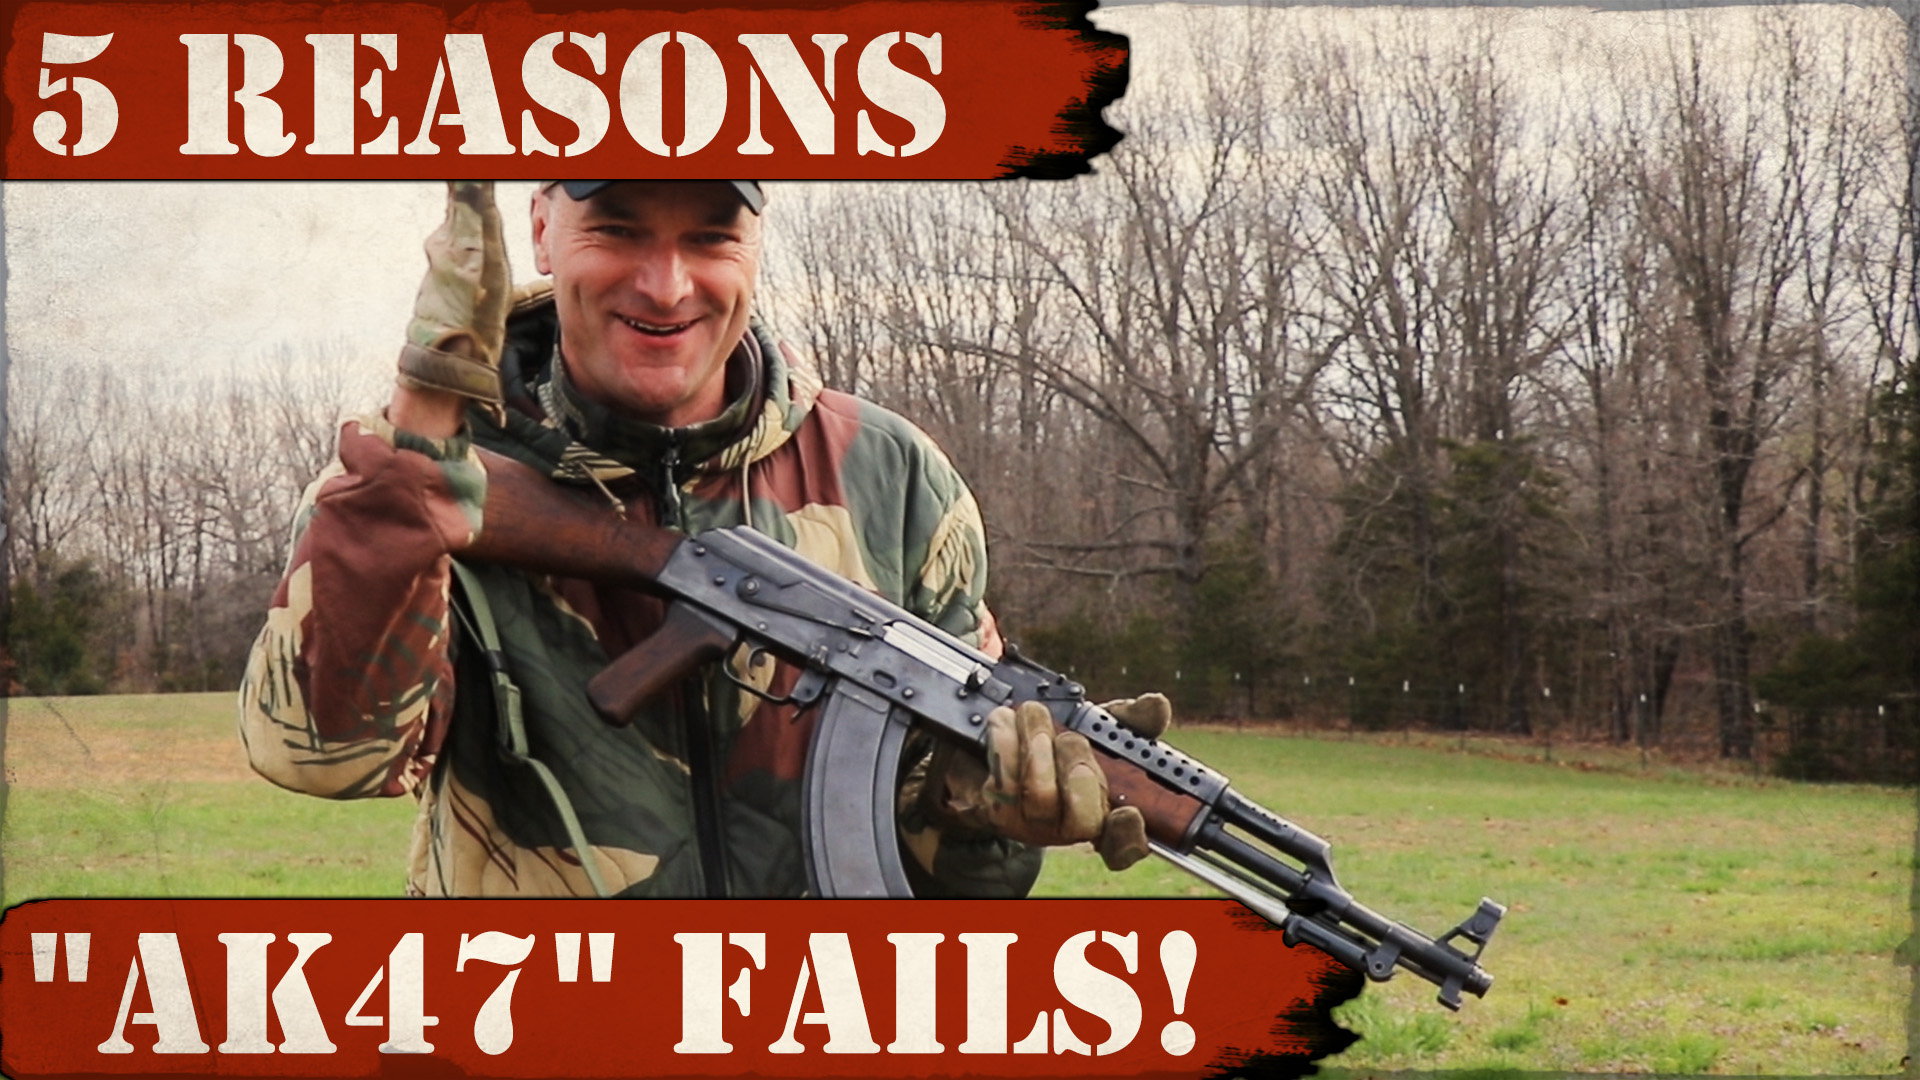 5 Reasons “AK47” Fails! 😮